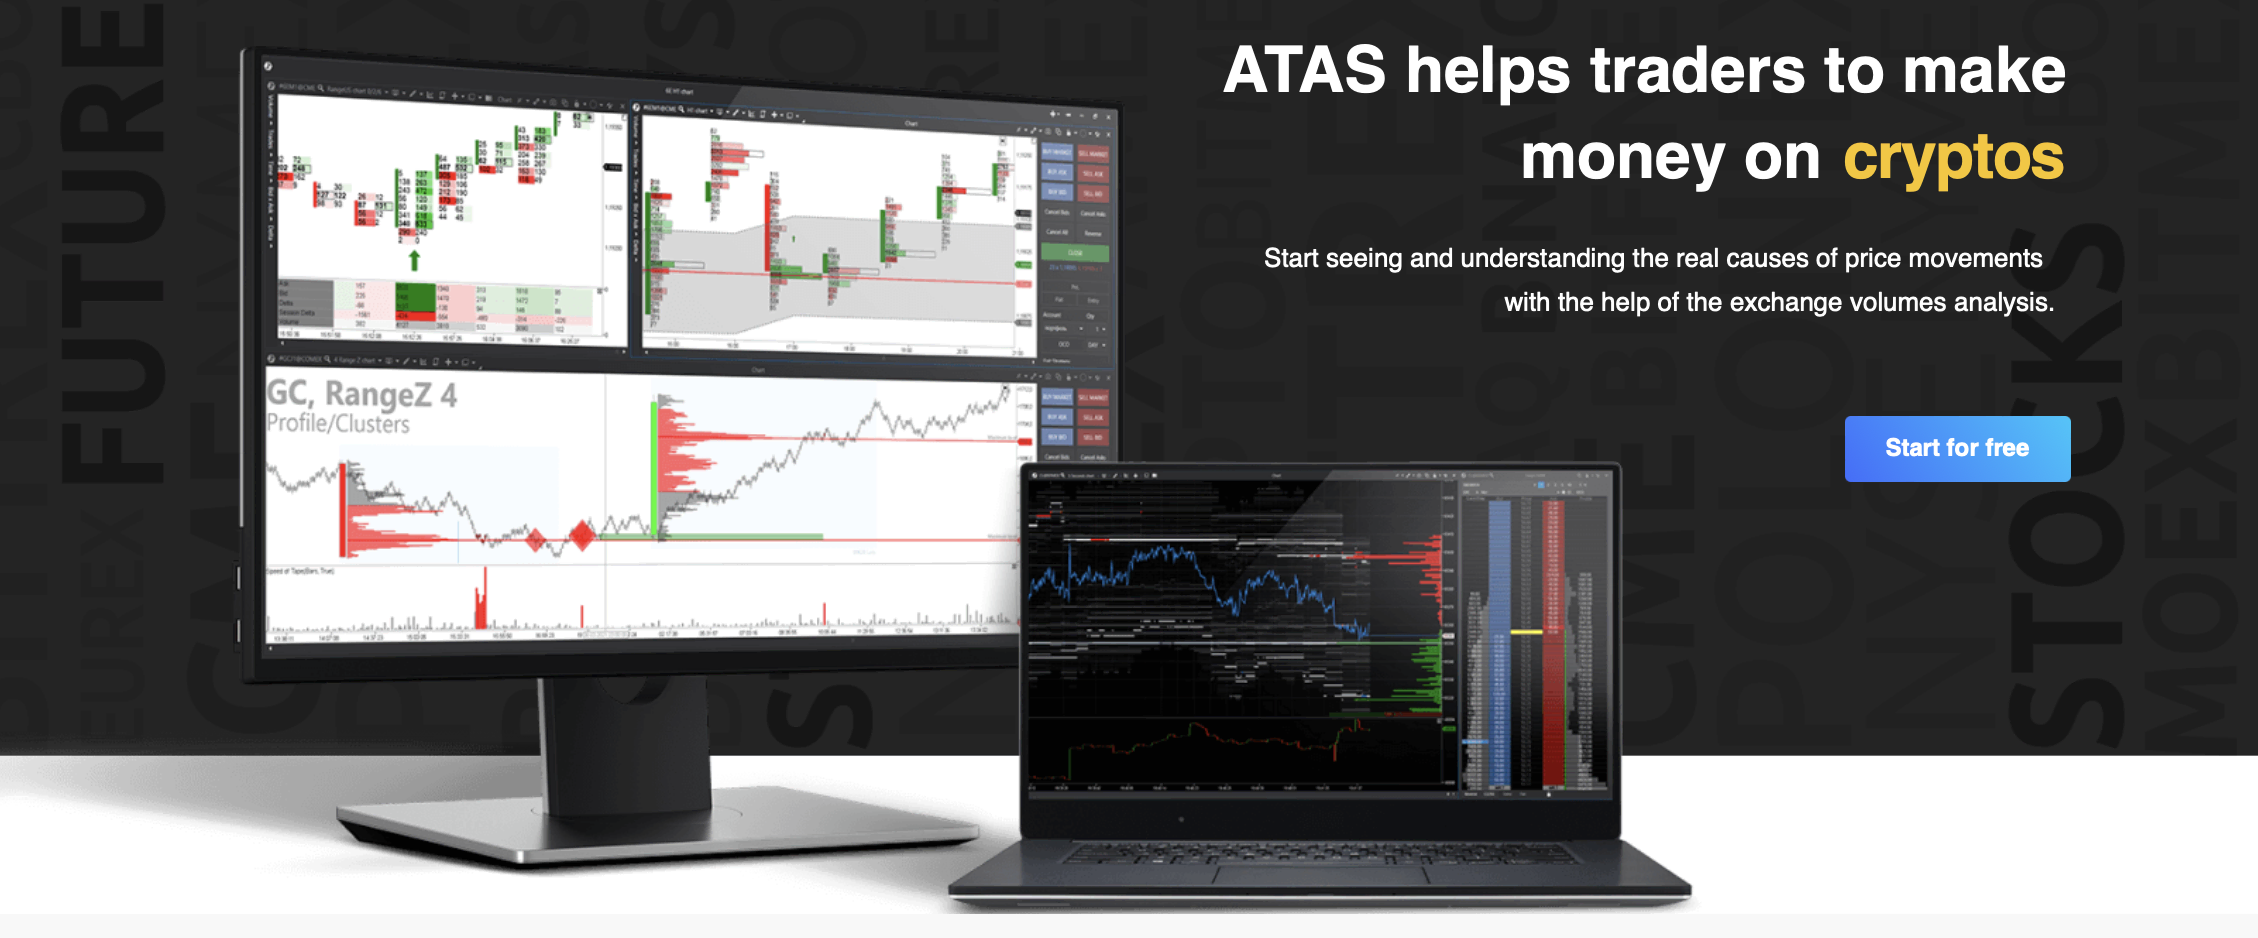 O site oficial da plataforma de negociação ATAS